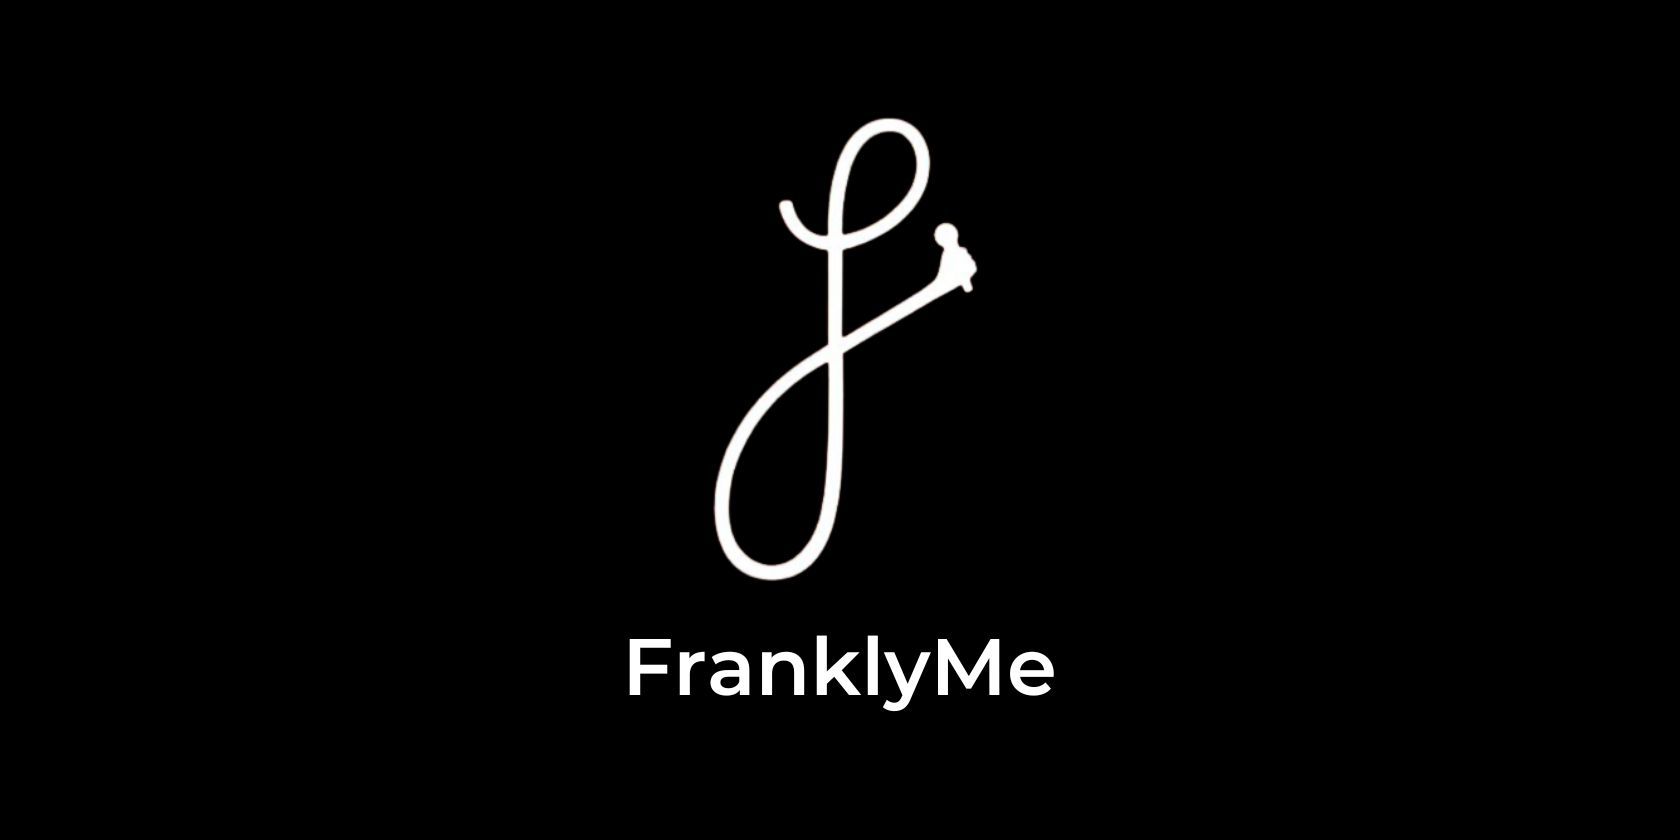 FranklyMe app